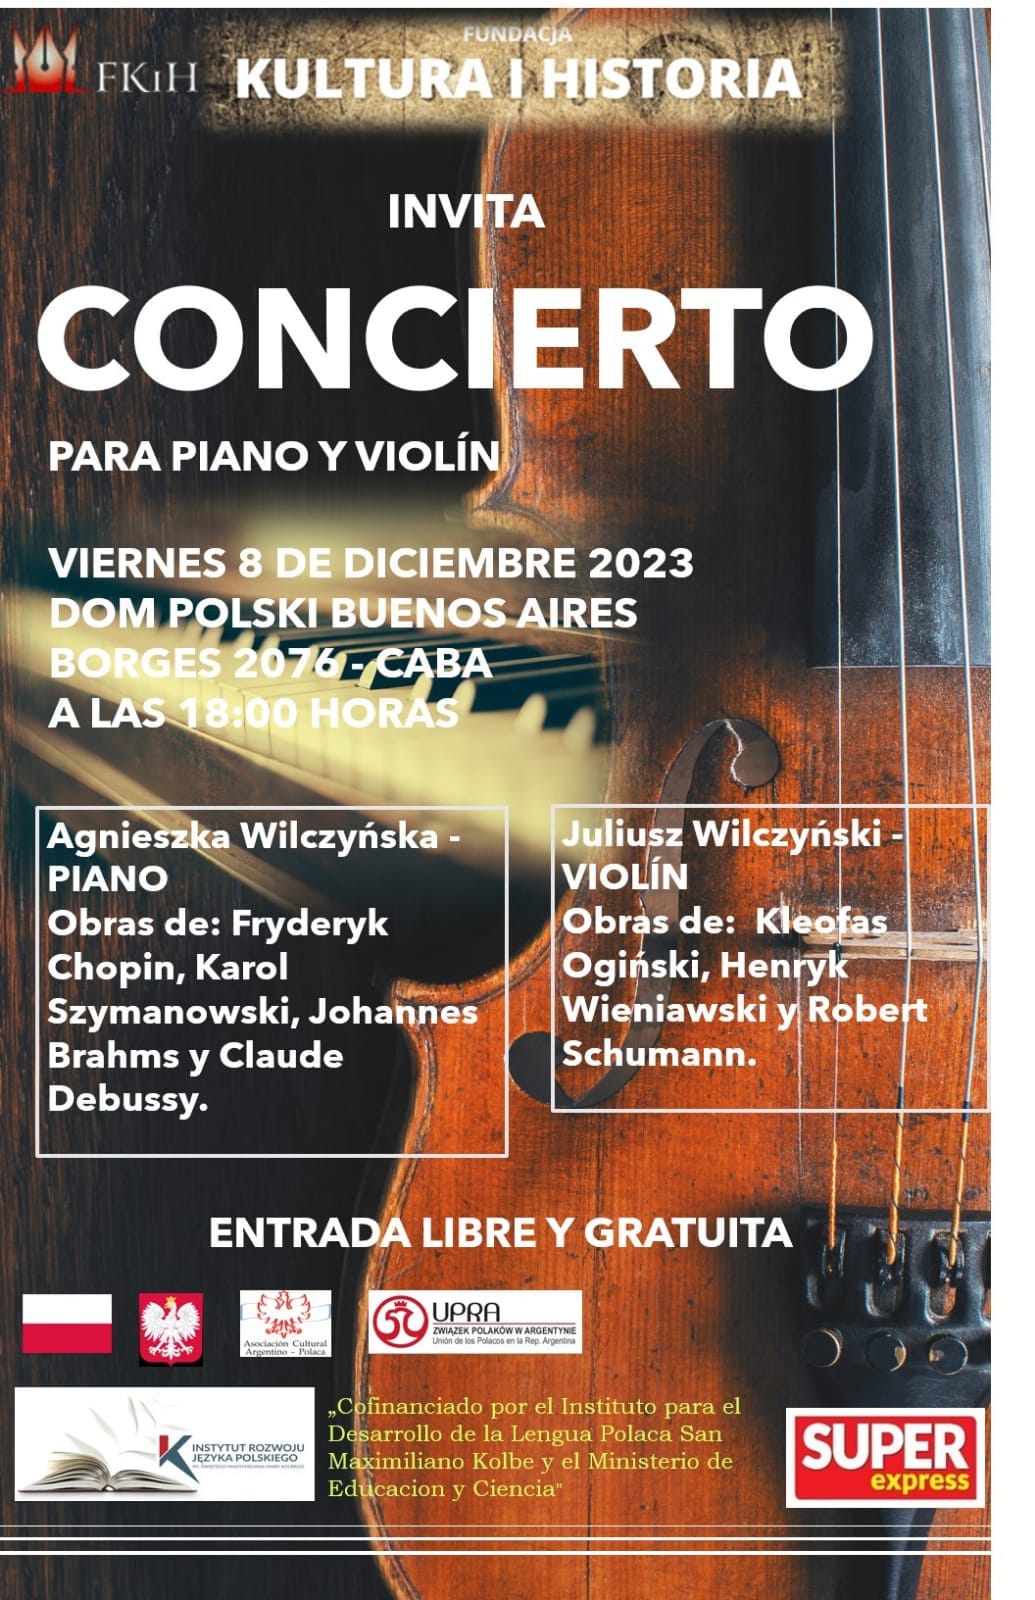 Concierto para piano y violín en el Dom Polski